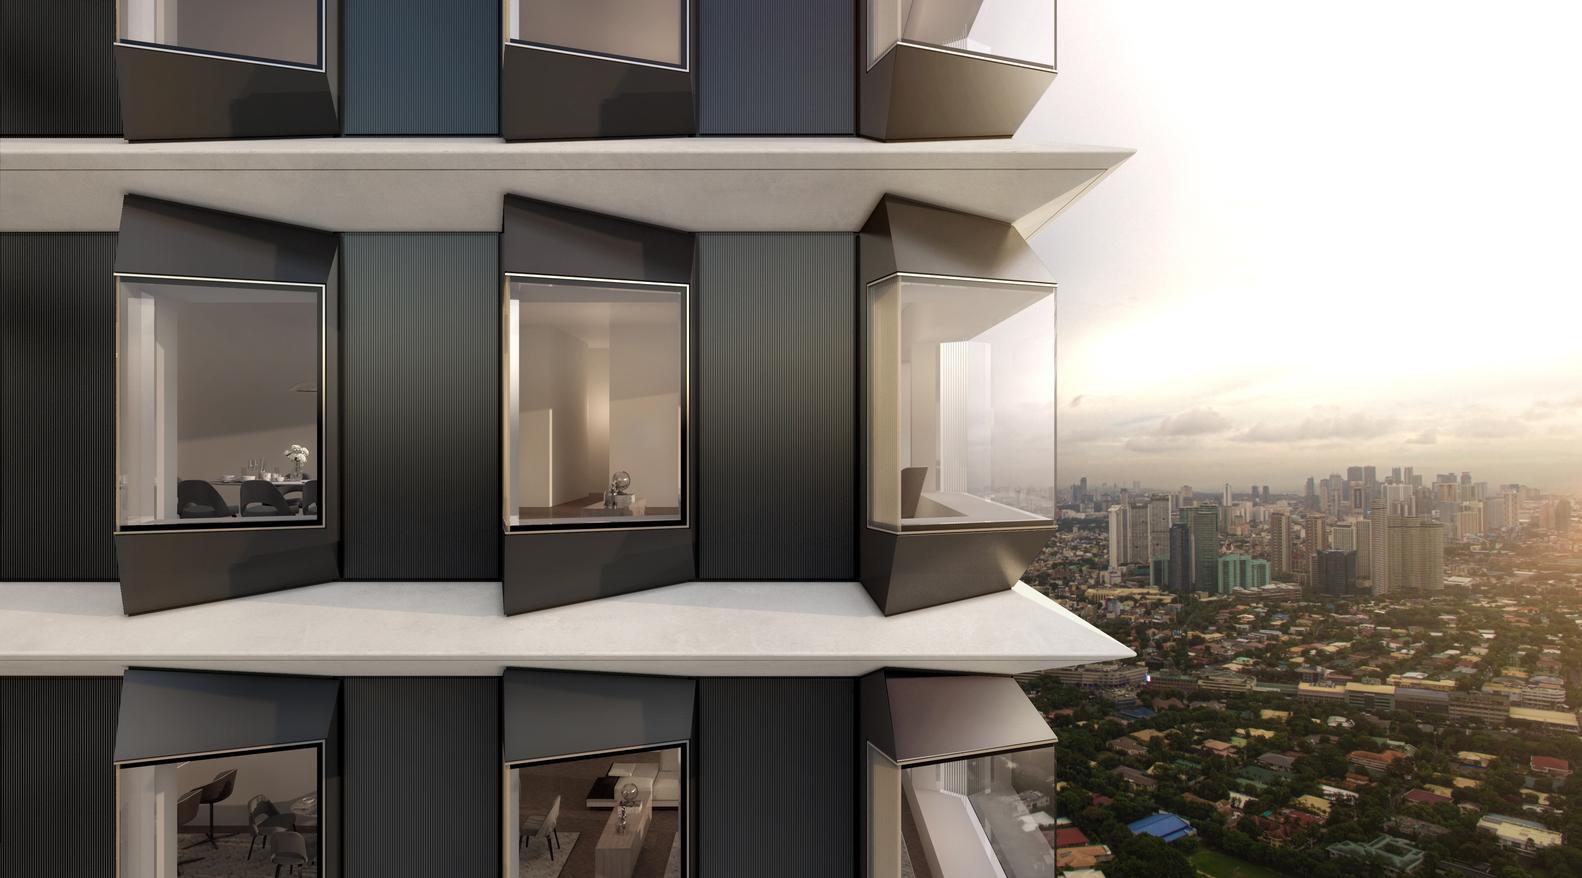 【體驗靈活住宅佈局】Foster + Partners首個菲律賓項目 打造出無柱建築設計 